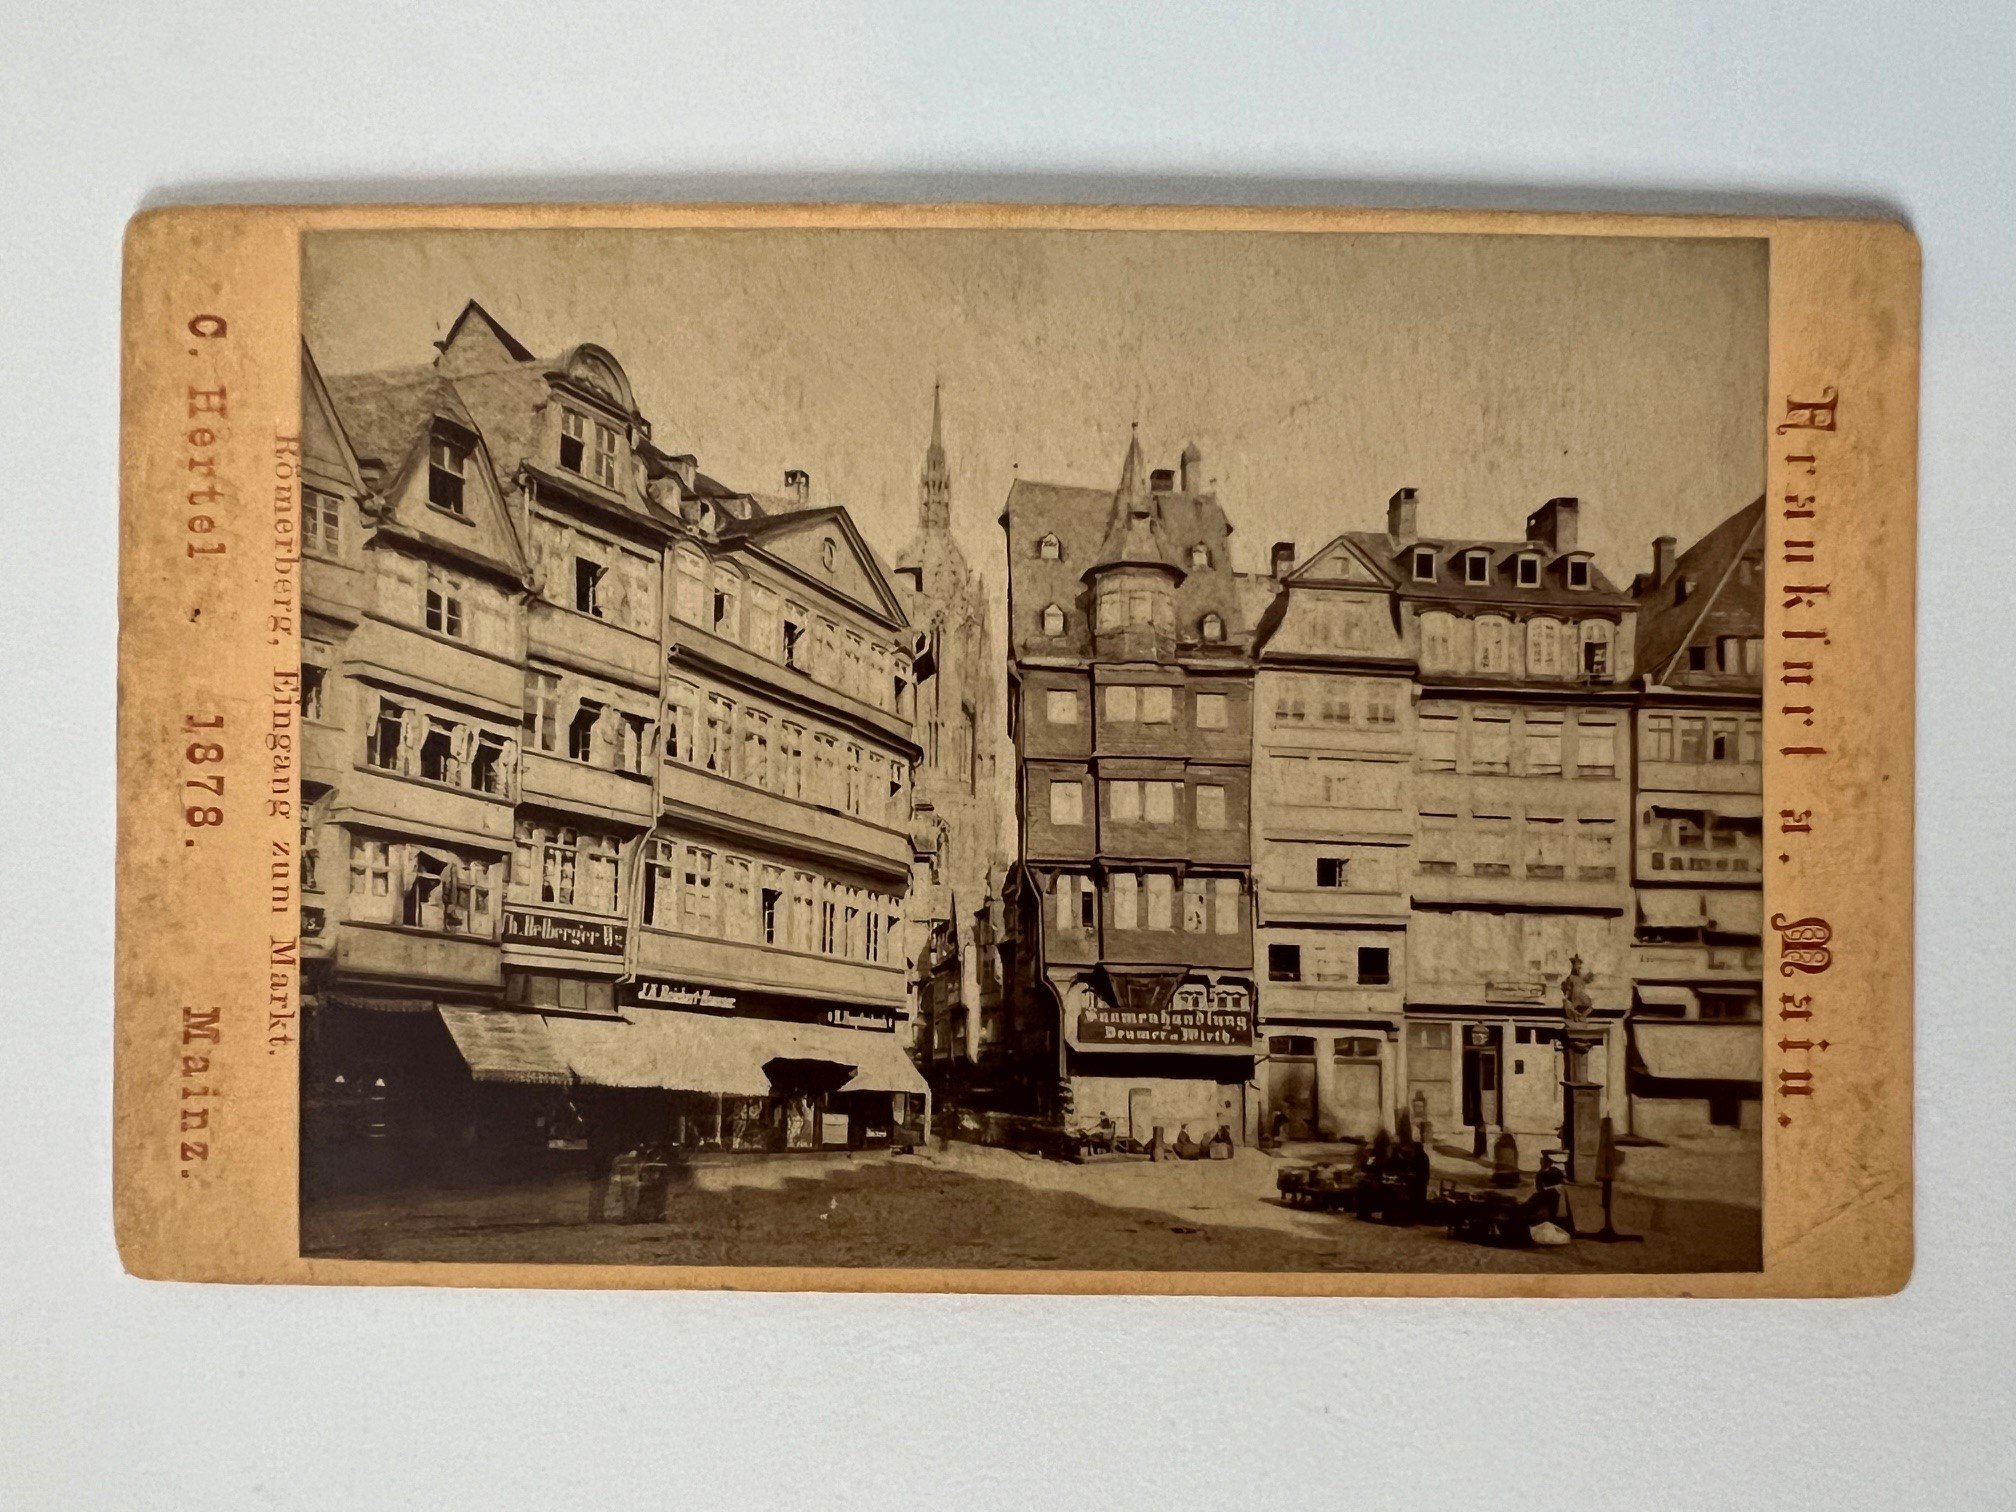 CdV, Carl Hertel, Frankfurt, Römerbeg, Eingang zum Markt, 1878. (Taunus-Rhein-Main - Regionalgeschichtliche Sammlung Dr. Stefan Naas CC BY-NC-SA)